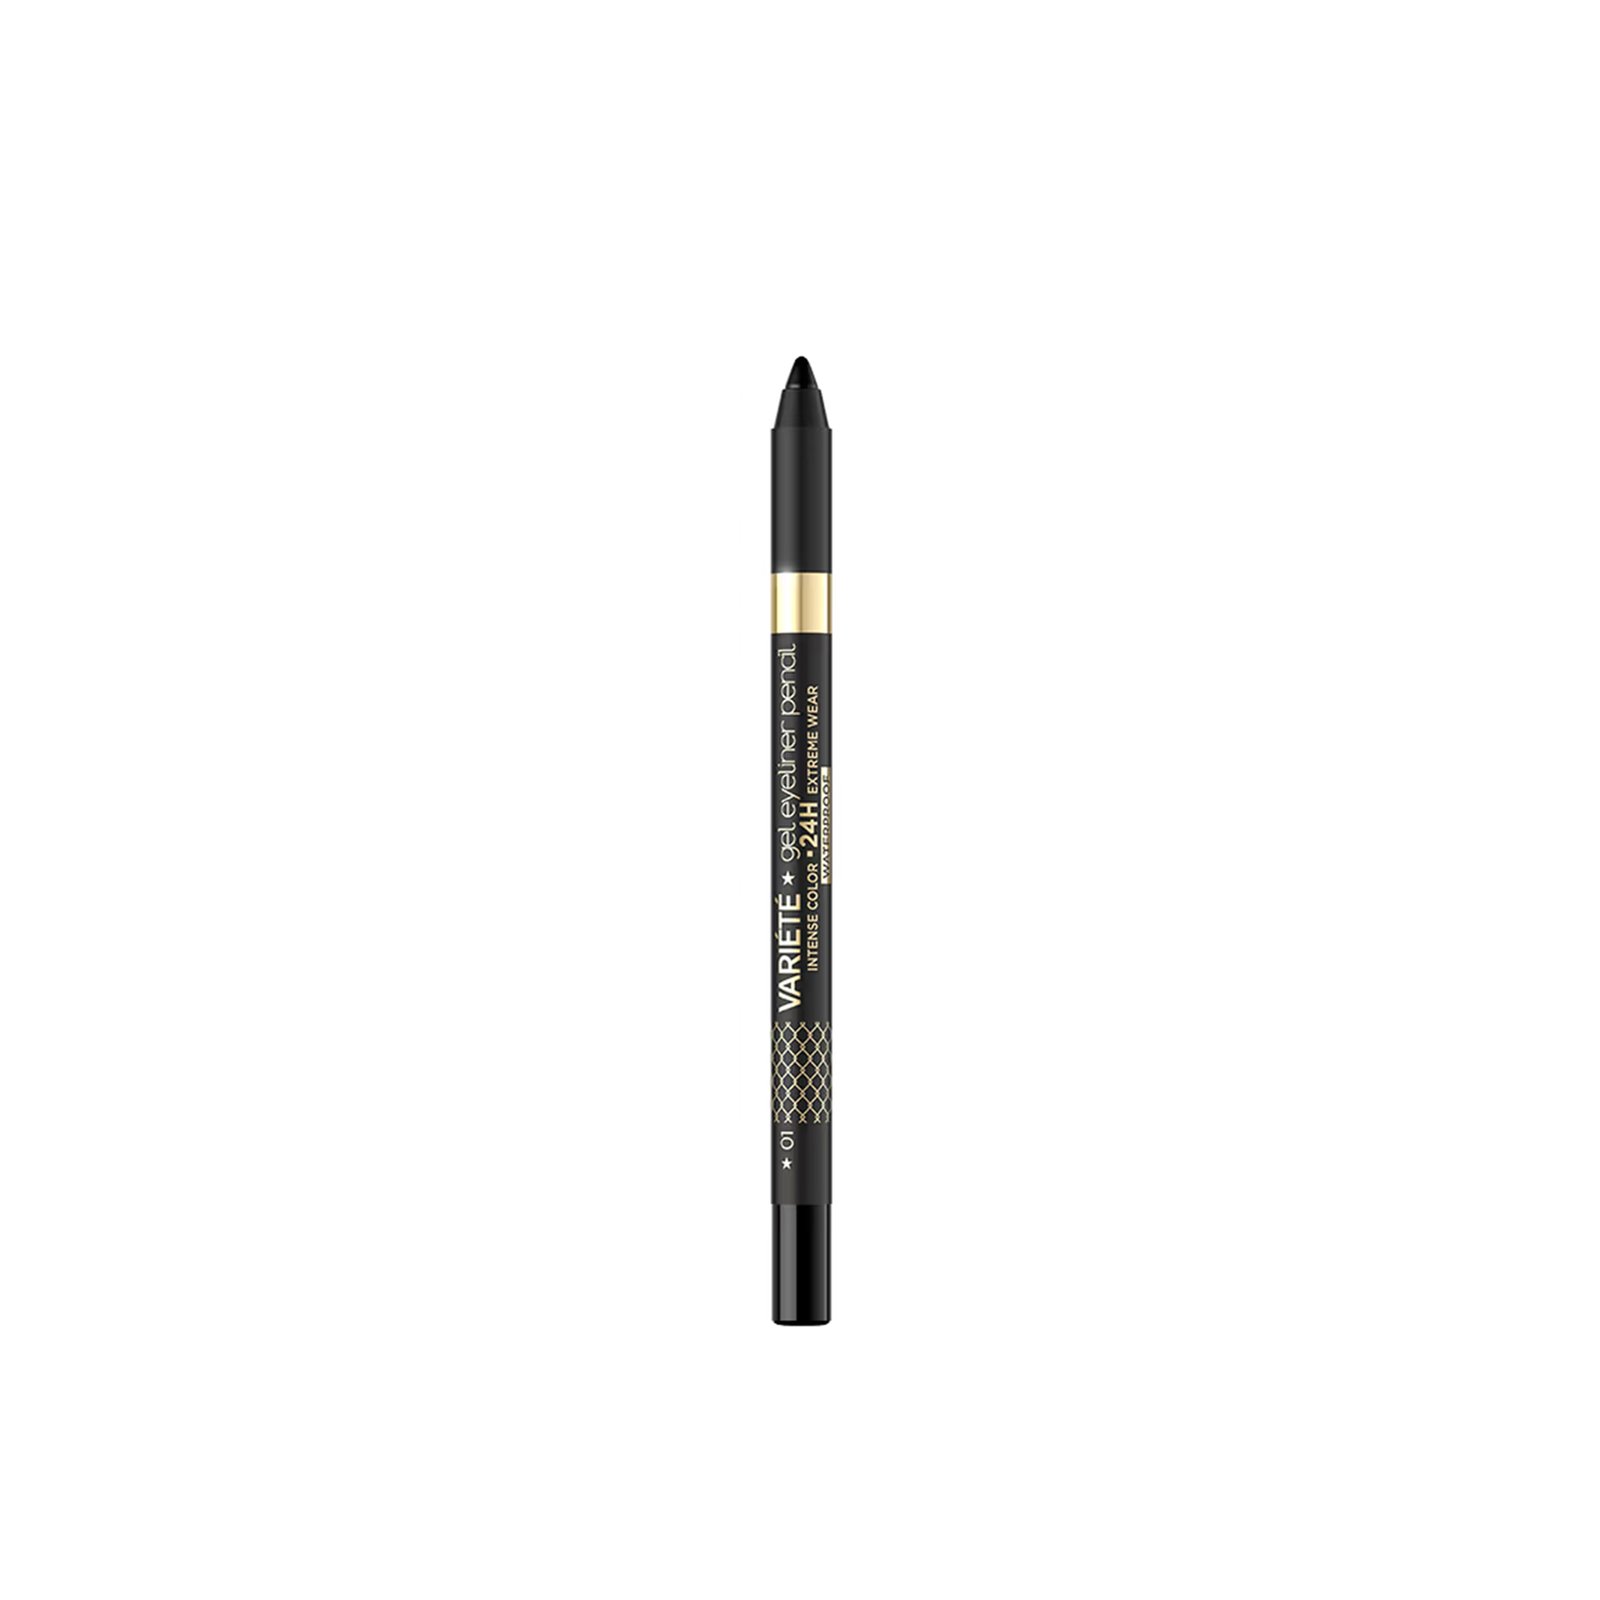 Eveline Cosmetics Variété Gel Eyeliner Pencil 24h Waterproof 01 Pure Black